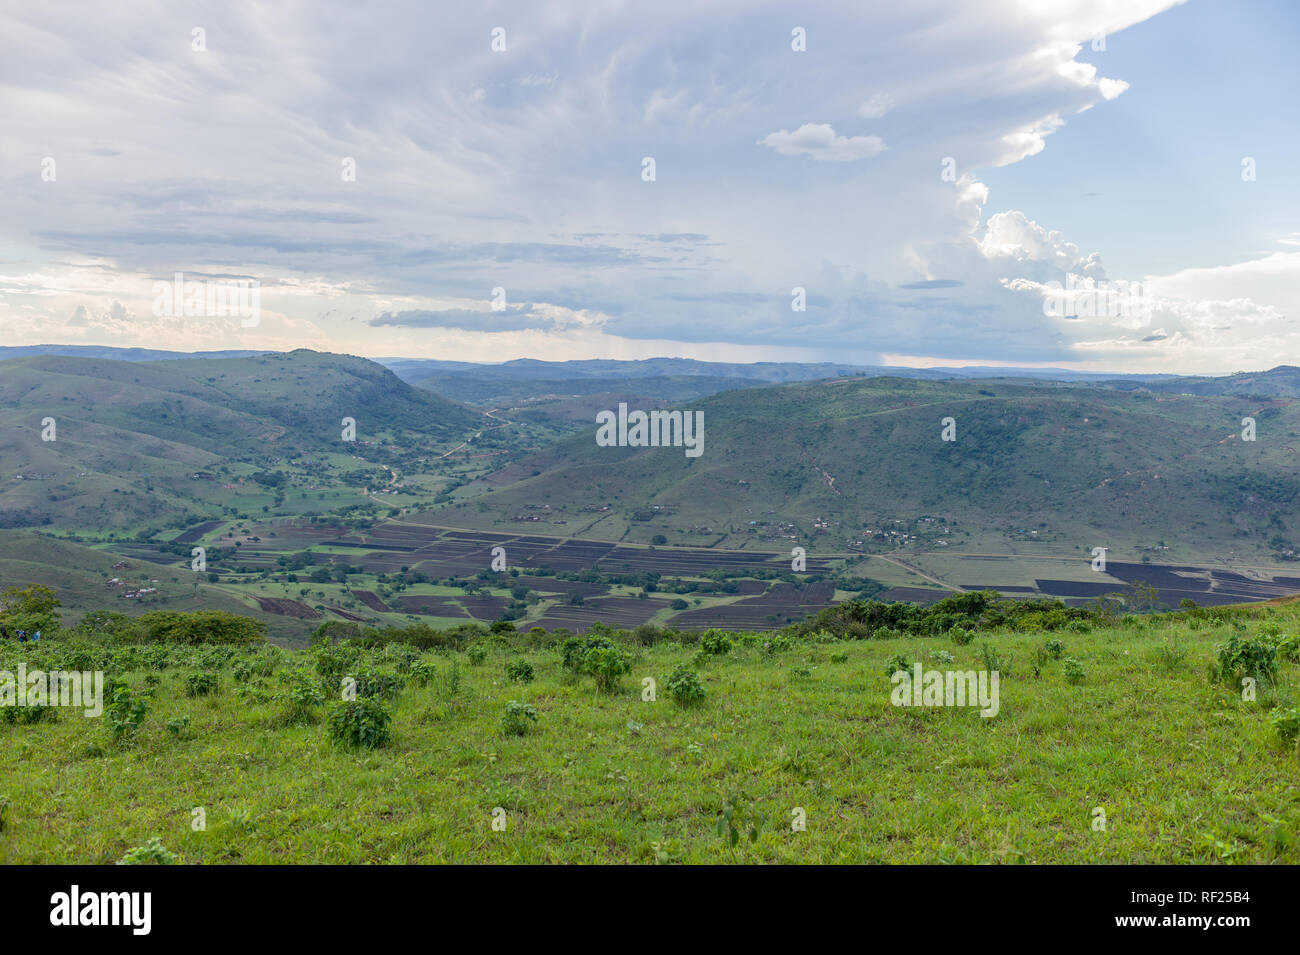 Les zones rurales de KwaZulu-Natal, Afrique du Sud, disposent de pâturage et l'agriculture à petite échelle sur des collines herbeuses. Banque D'Images